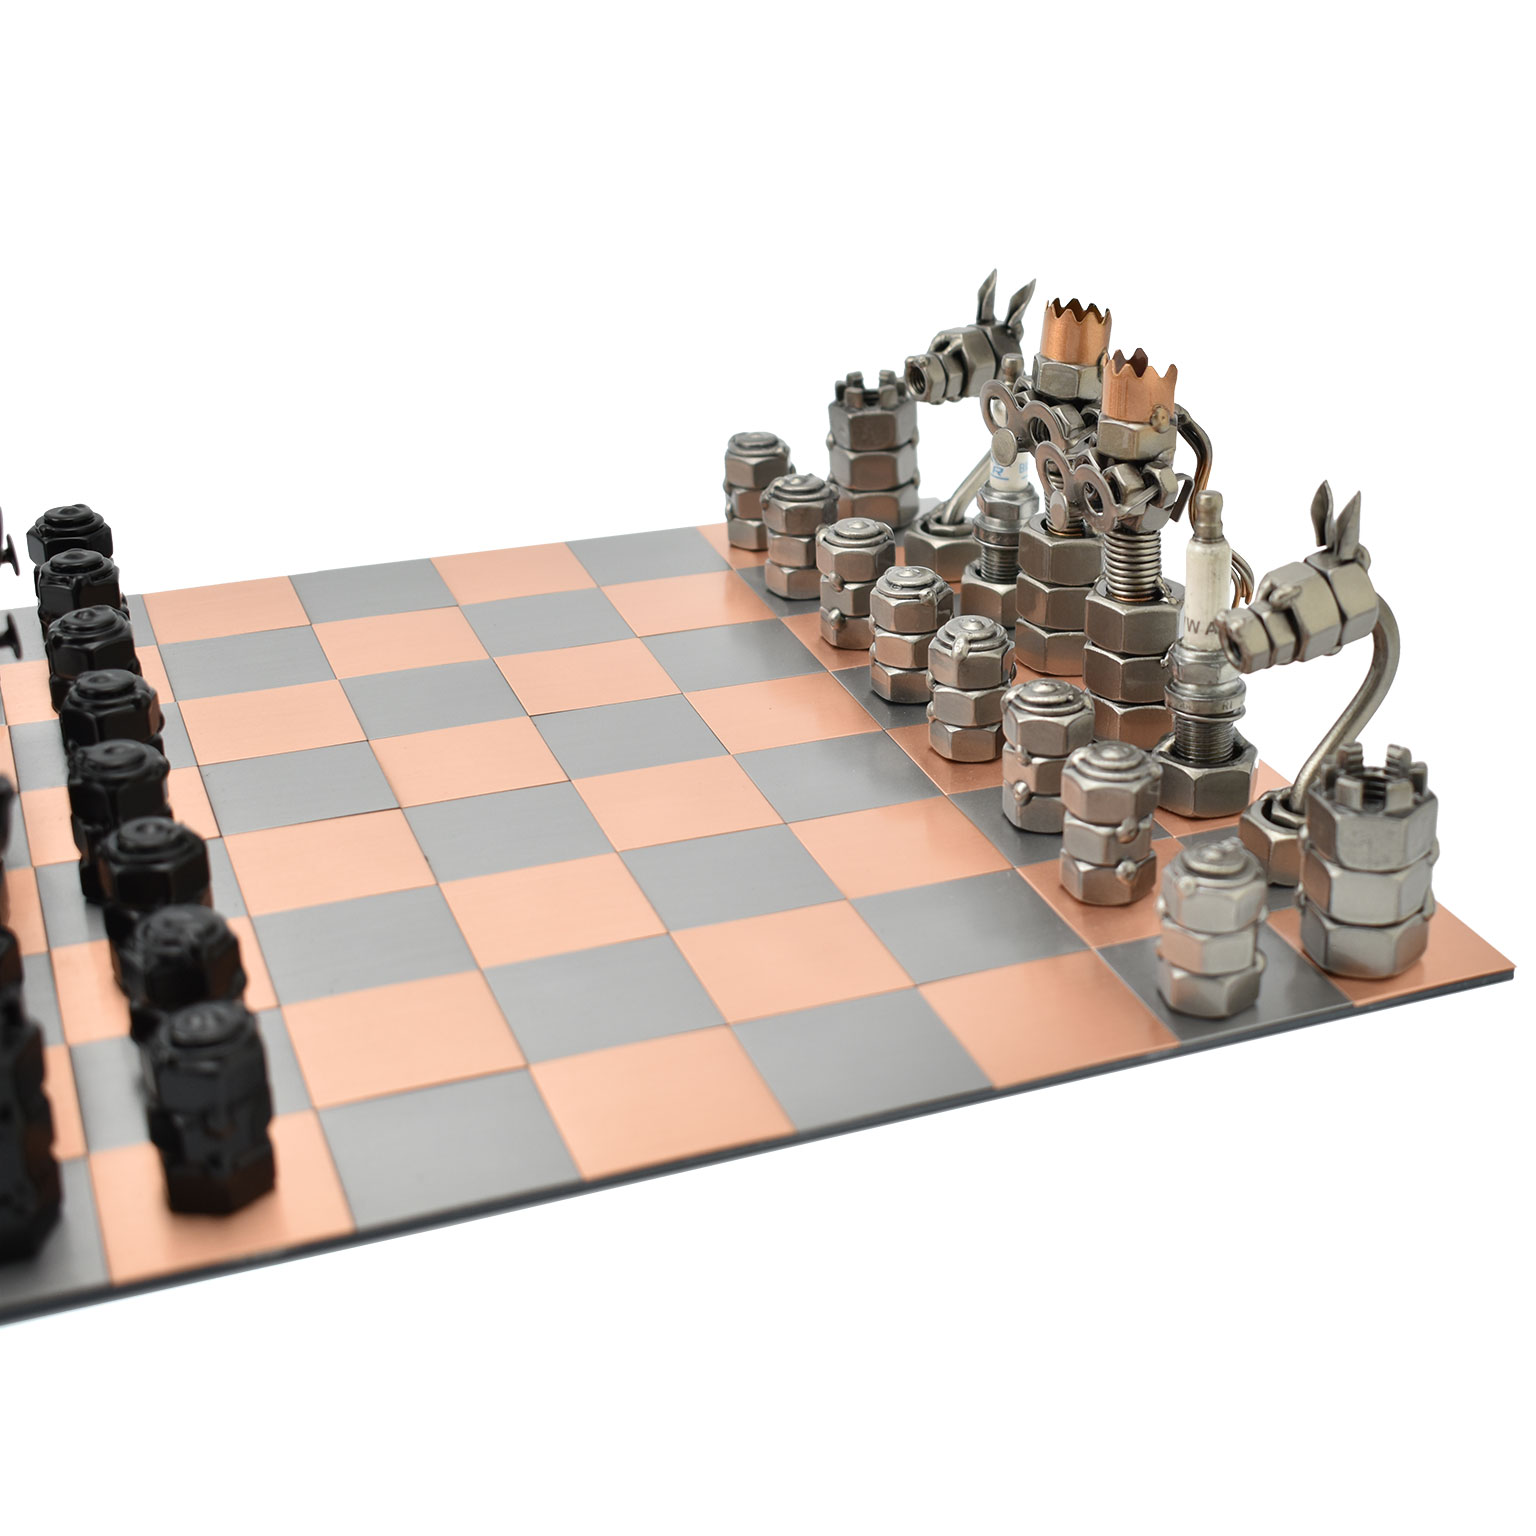 メタル / チェスイメージ2